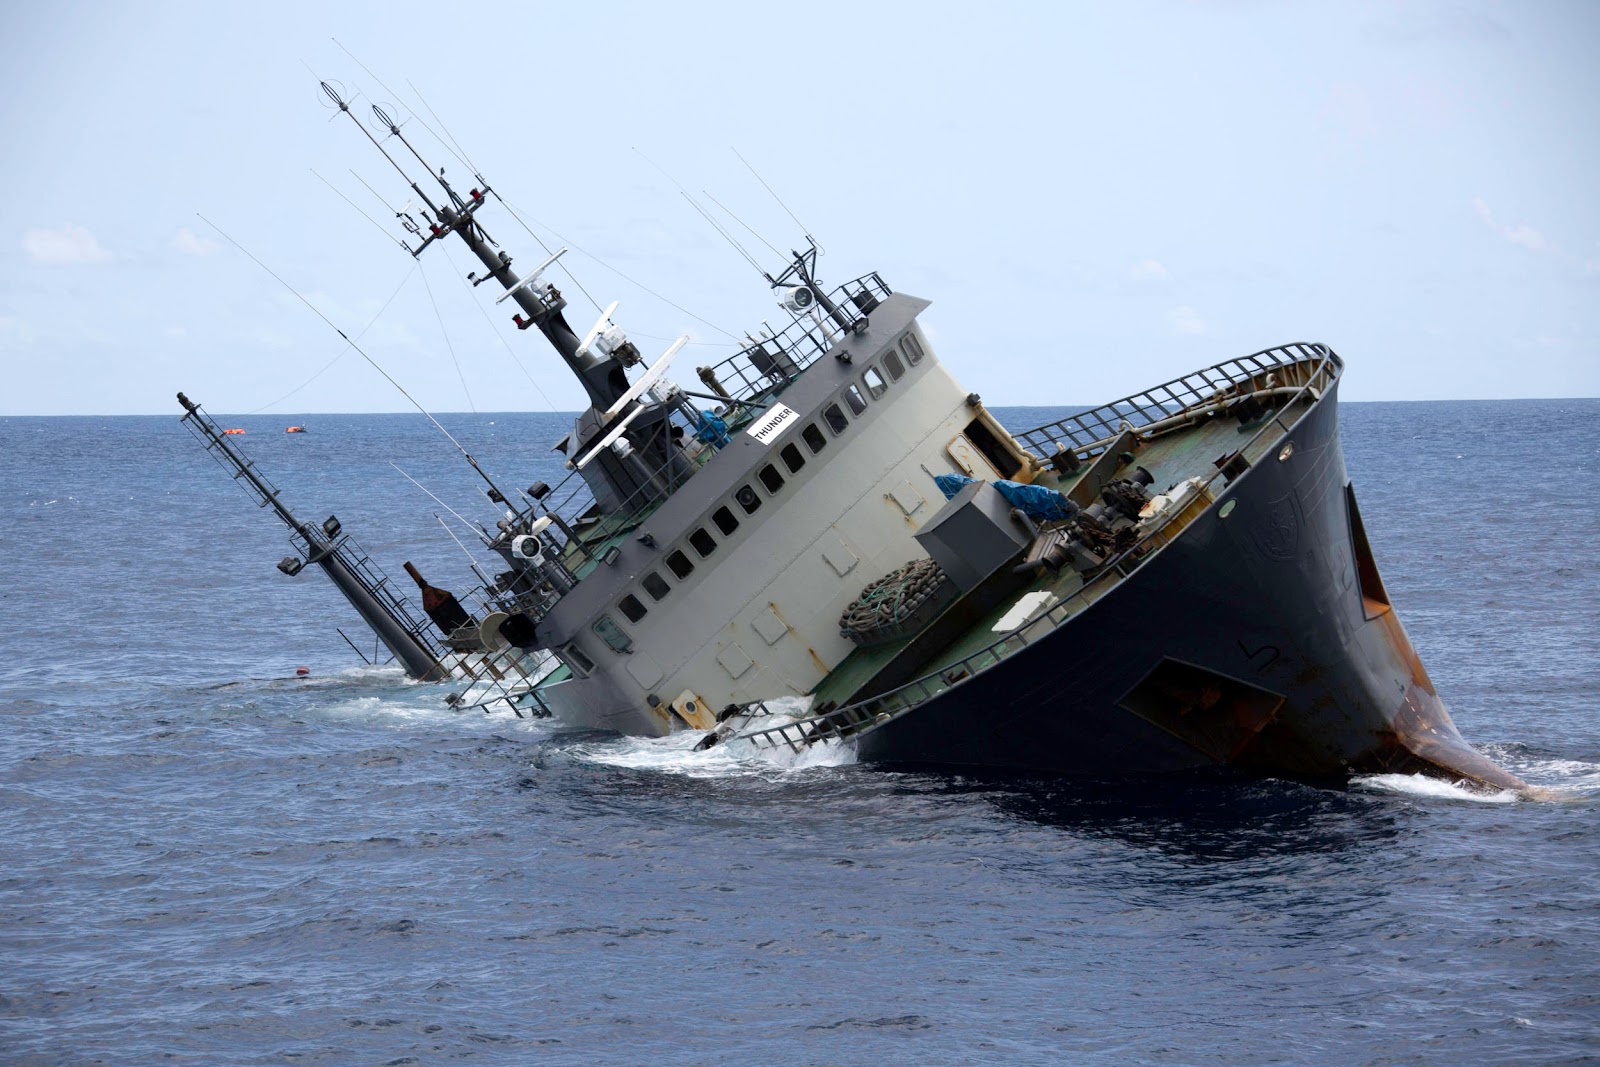 Я тону на корабле. Sea Shepherd корабли. Тонущий корабль. Тонущий военный корабль. Кораблекрушение военного корабля.